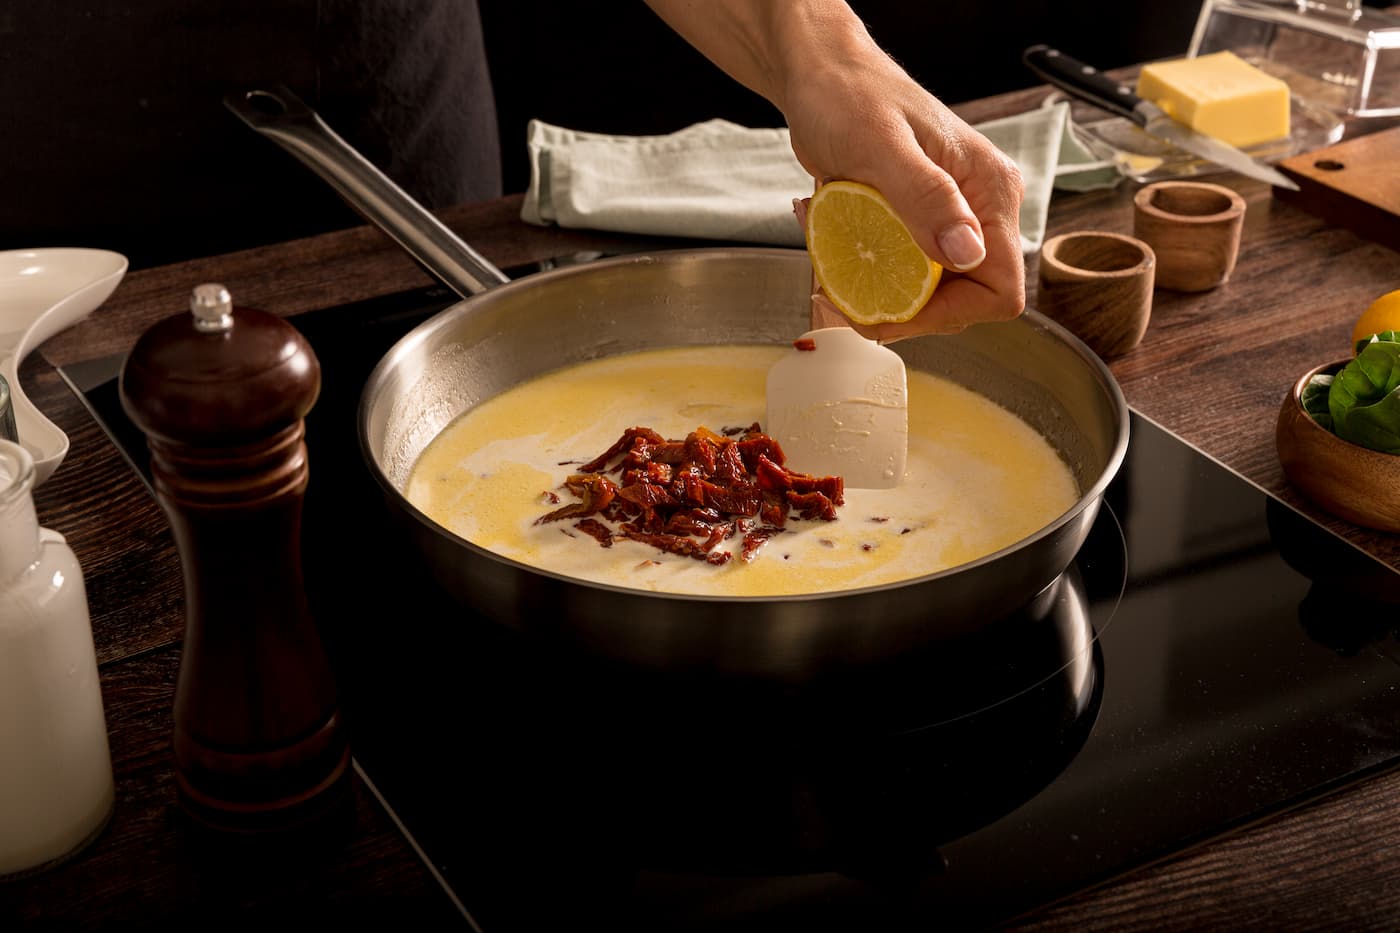 Receta Mezzelune Prosciutto di Parma y Parmigiano Reggiano con salsa tradicional toscana. Paso 3: vertemos el caldo de pollo, la nata, la pimienta molida y las gotitas de limón